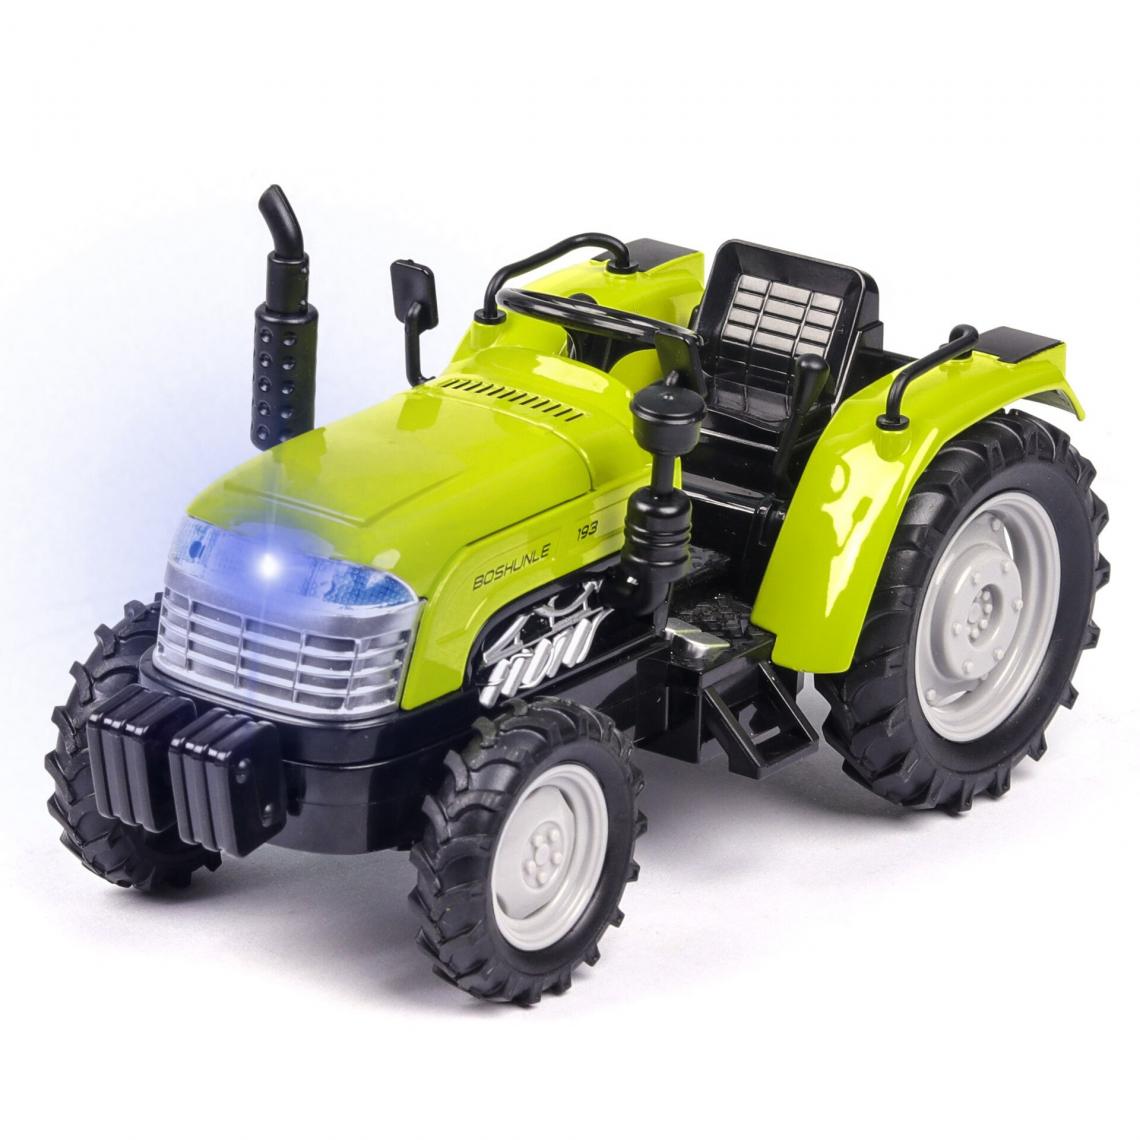 Universal - Simulation 1: 32 Alliage Plastic Farmer Tractor Toy Model Retire le son et la couleur claire de la collection de jouets pour enfants | Voiture jouet moulée sous pression(Vert) - Voitures